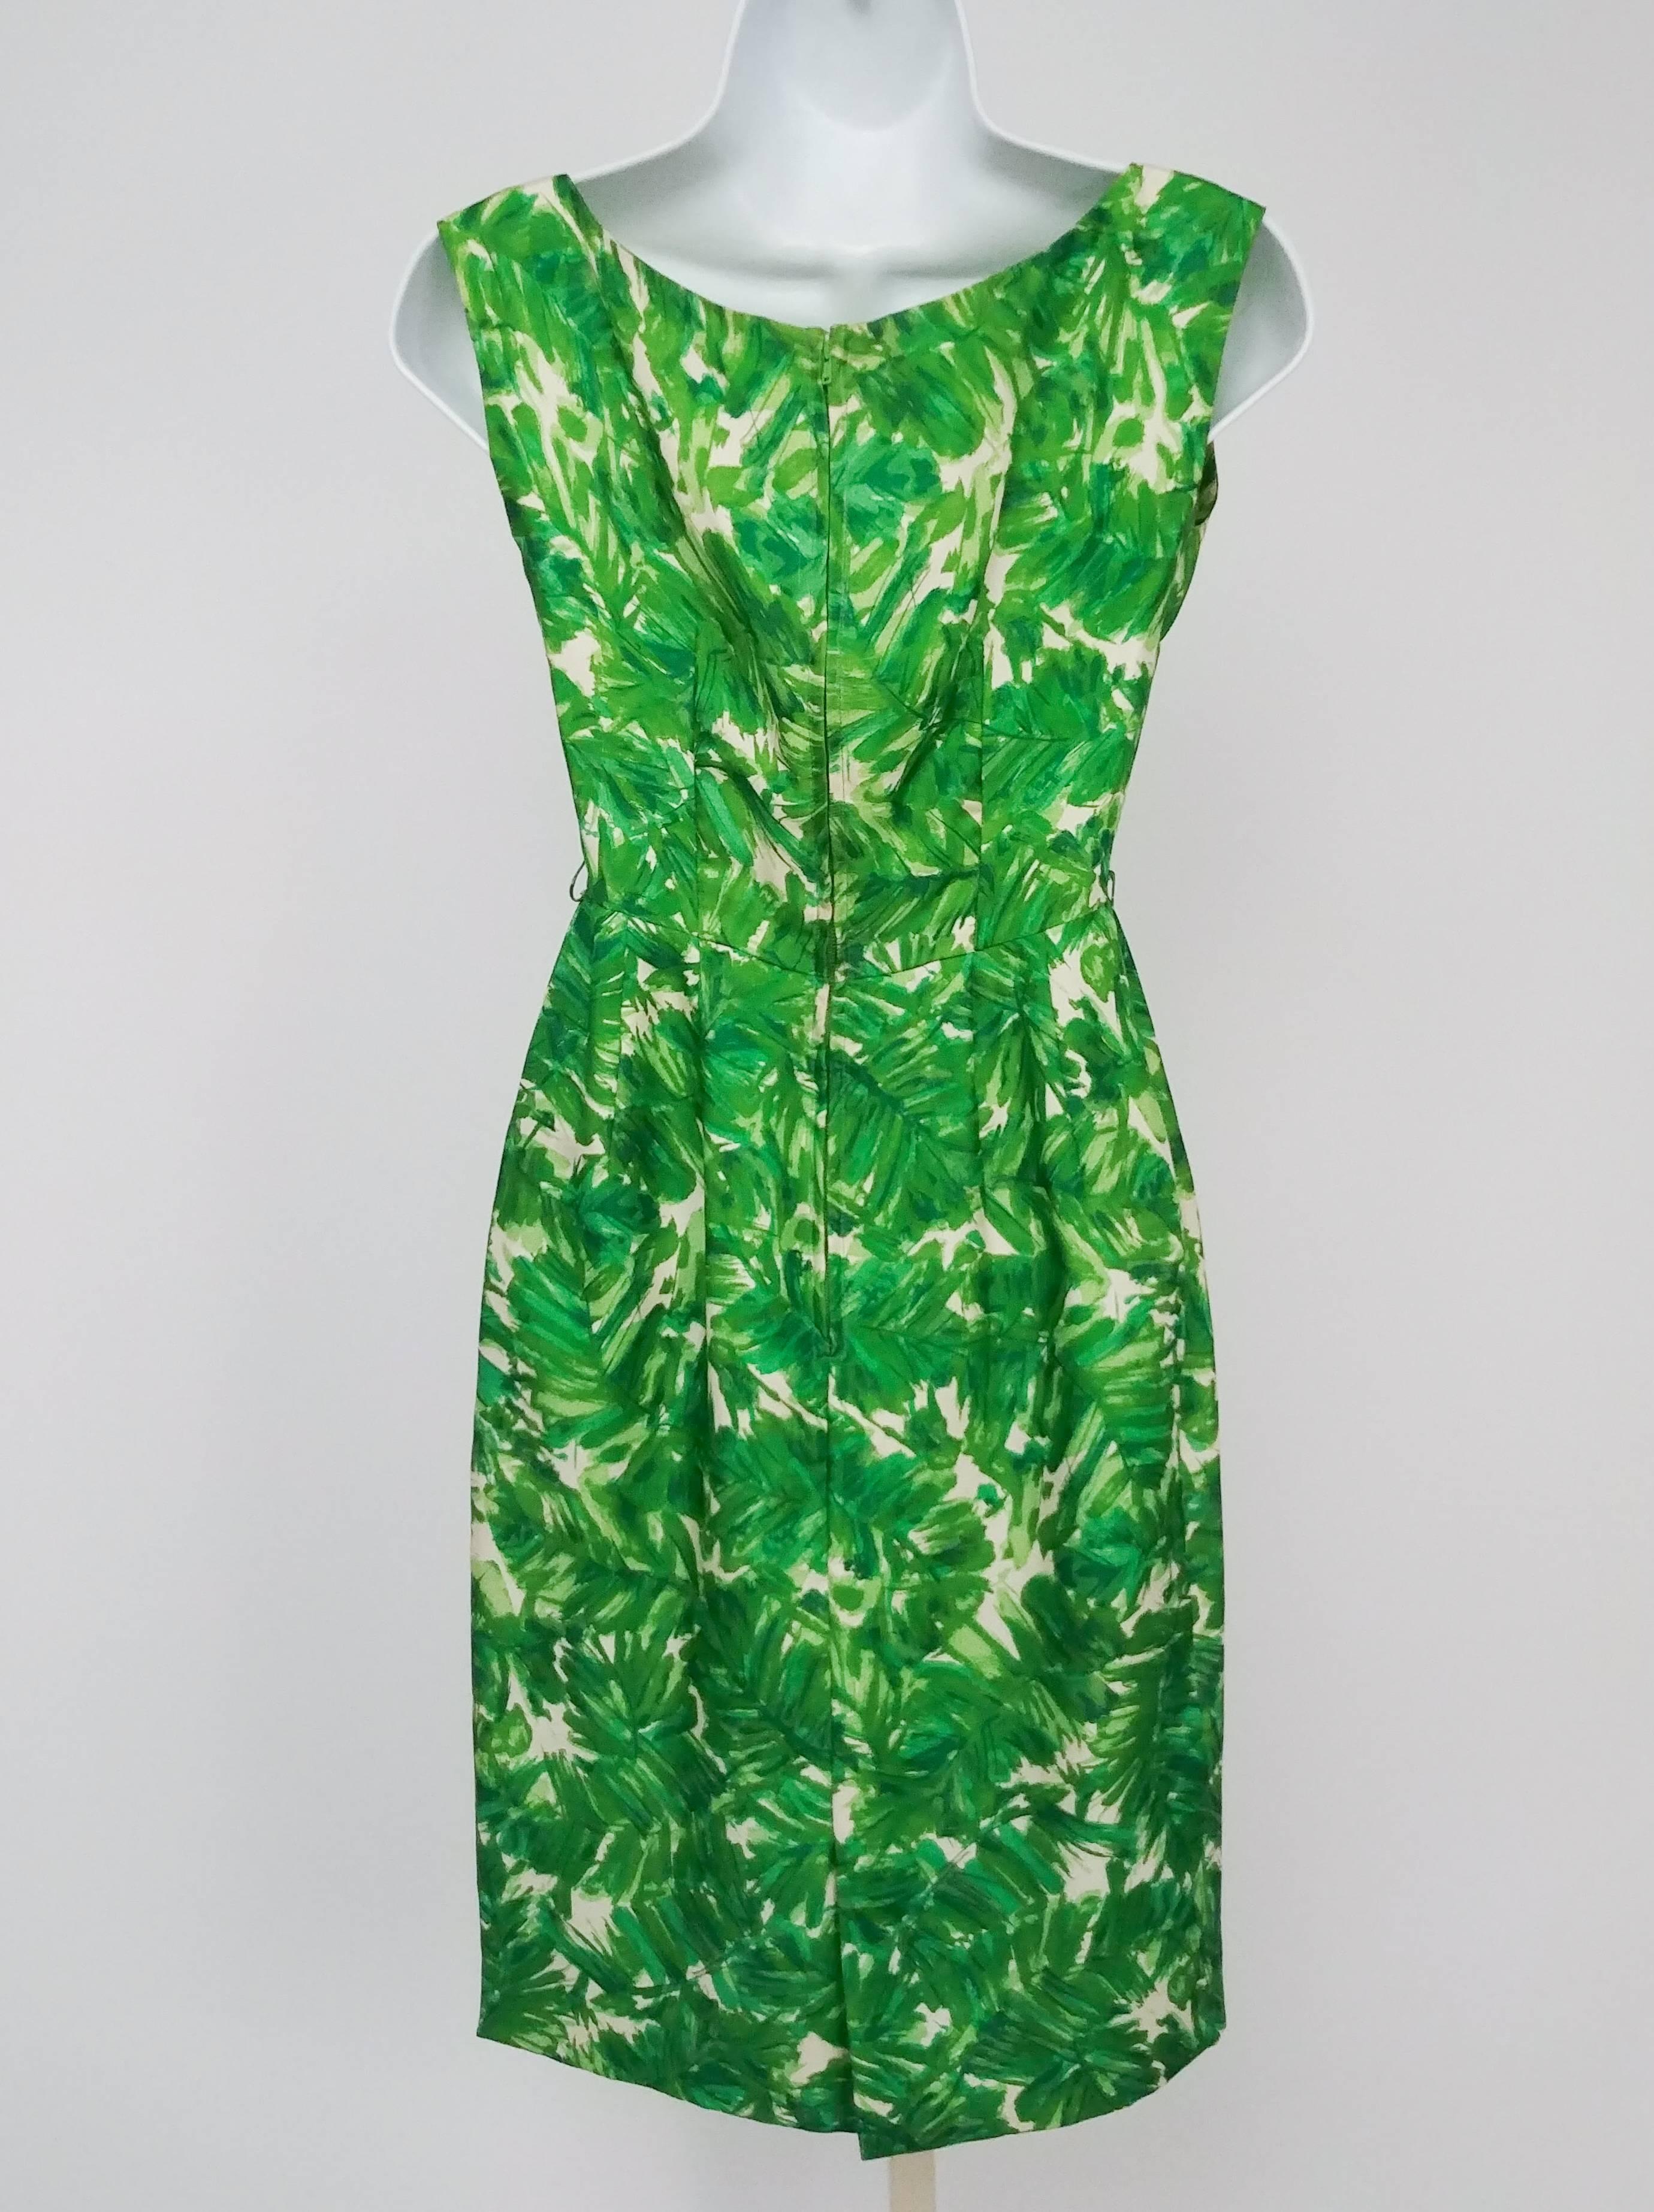 Green Printed Silk Sheath Dress, 1960s. Brightly printed silk sheath dress, zips up back. 